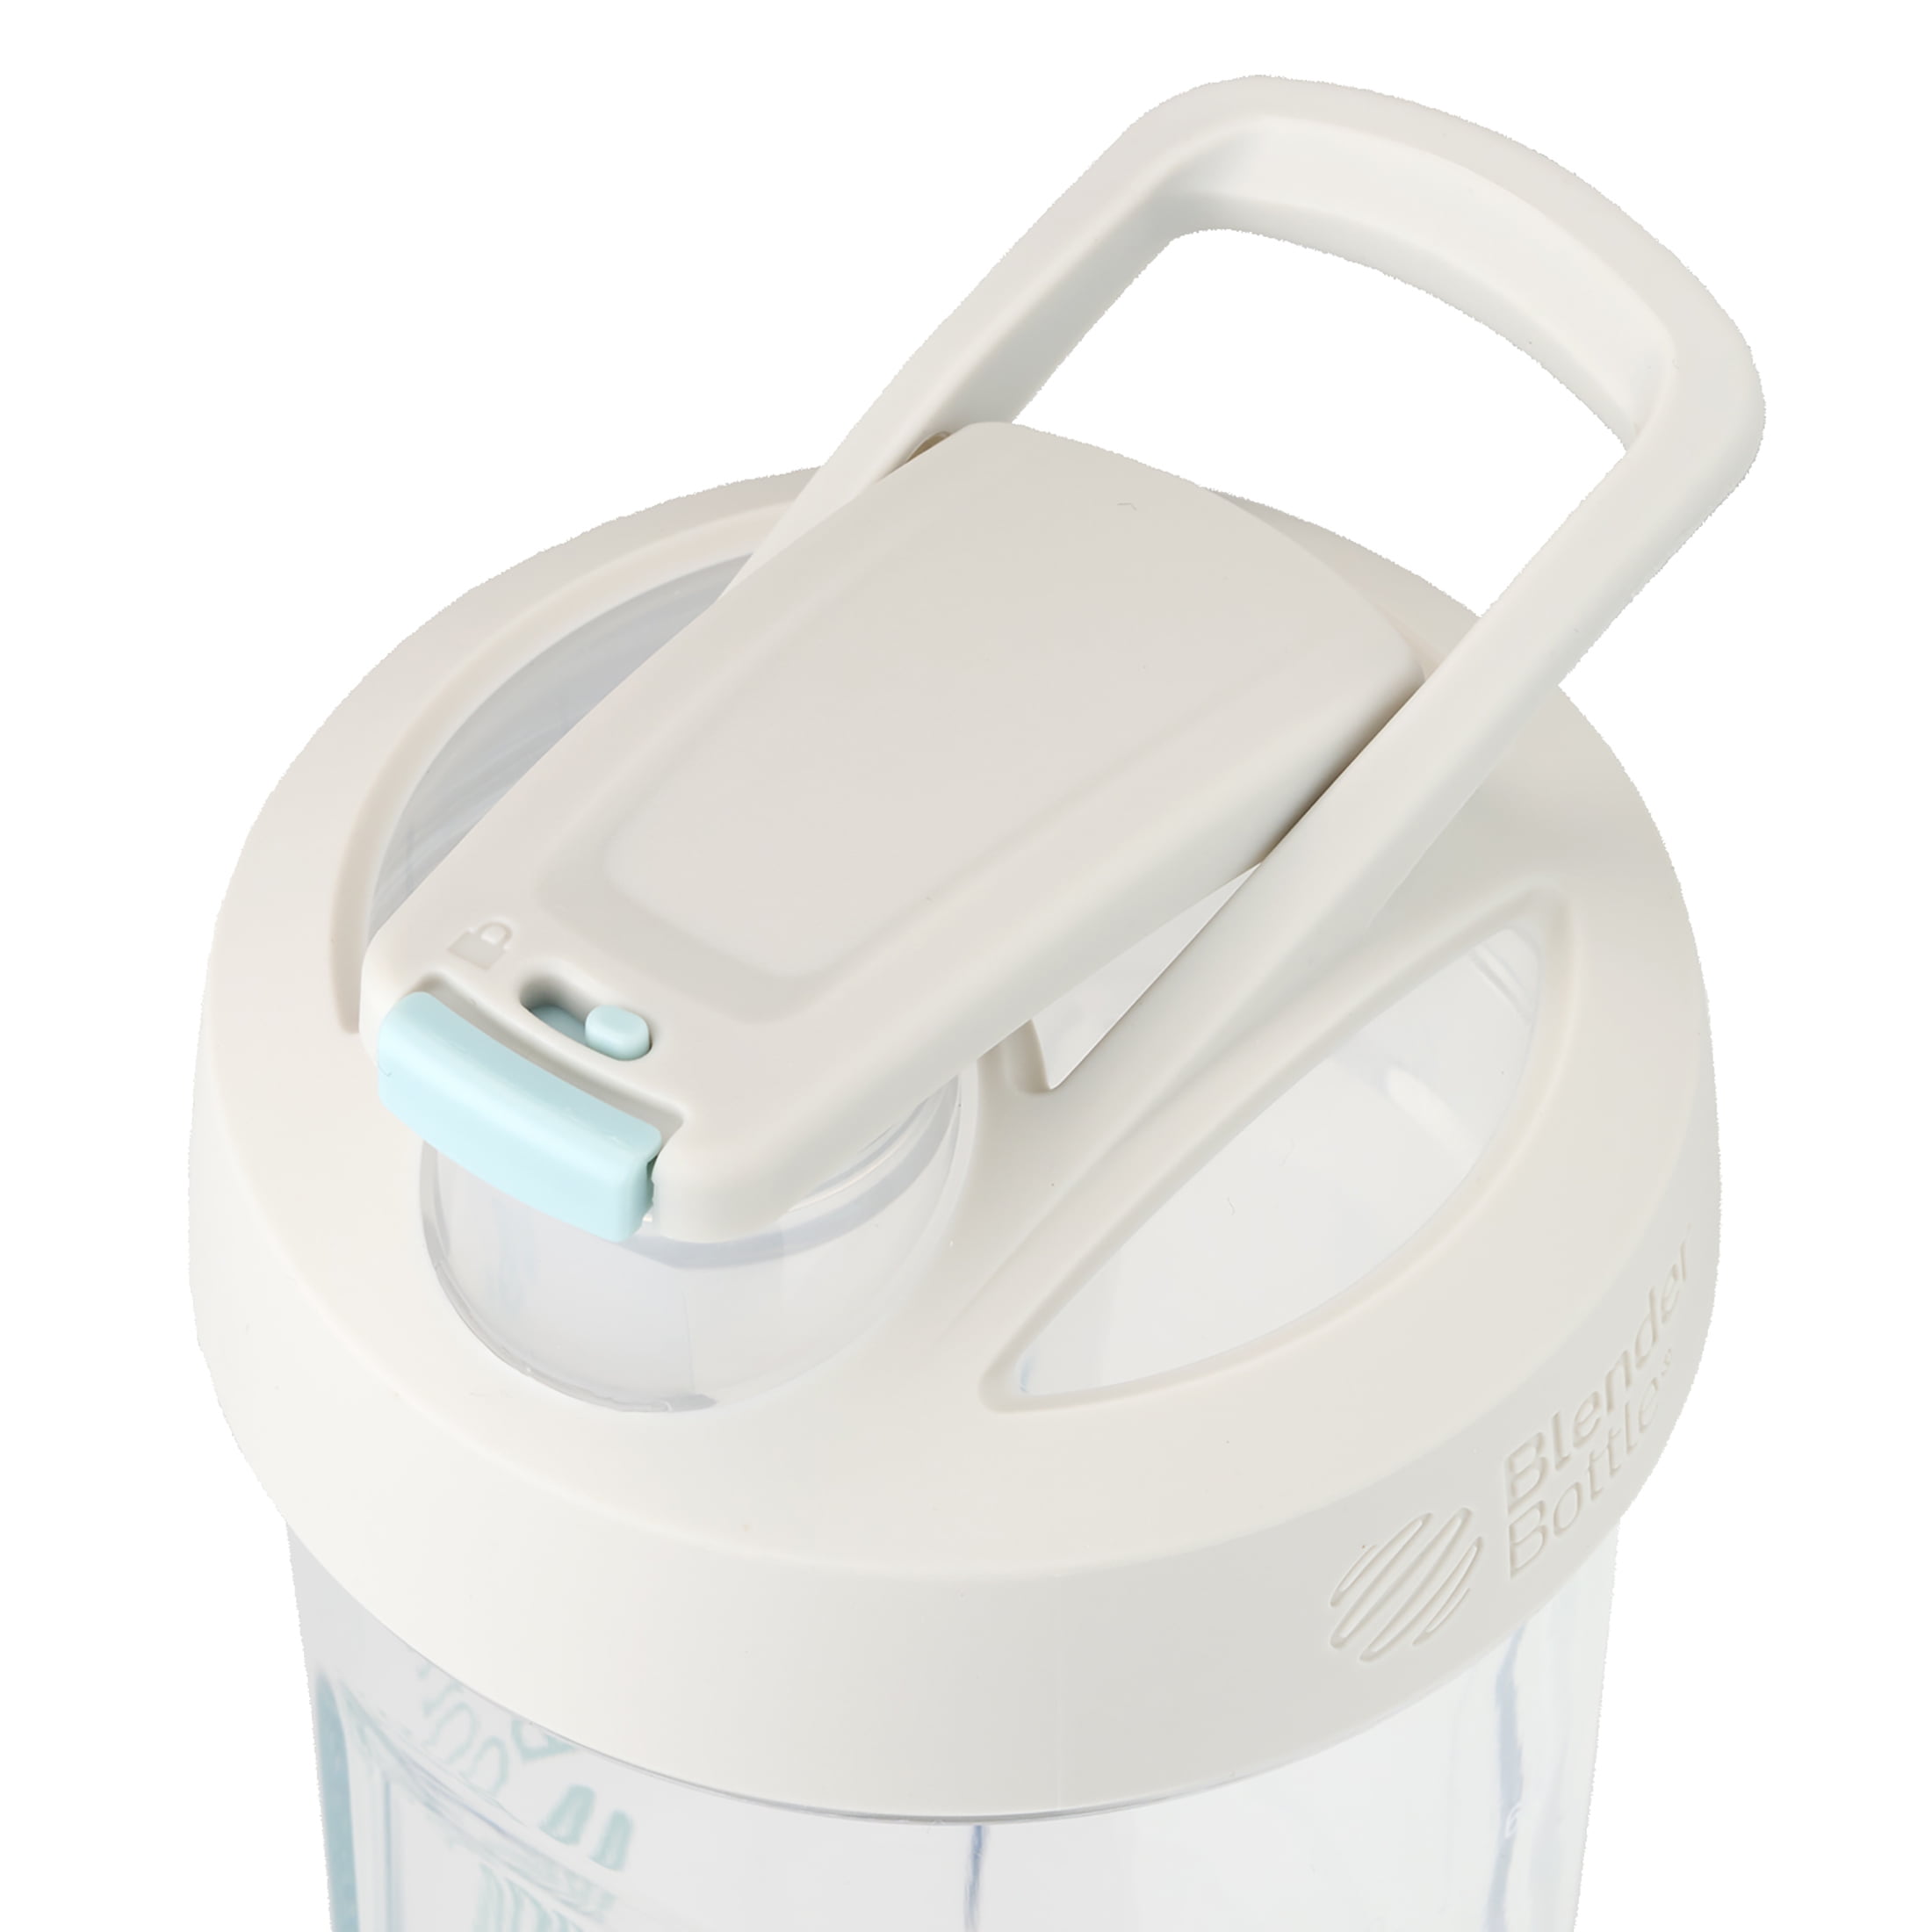 LEMONKIND BPA Free Tritan Eco-friendly Shaker Bottle, Clear/White - 40